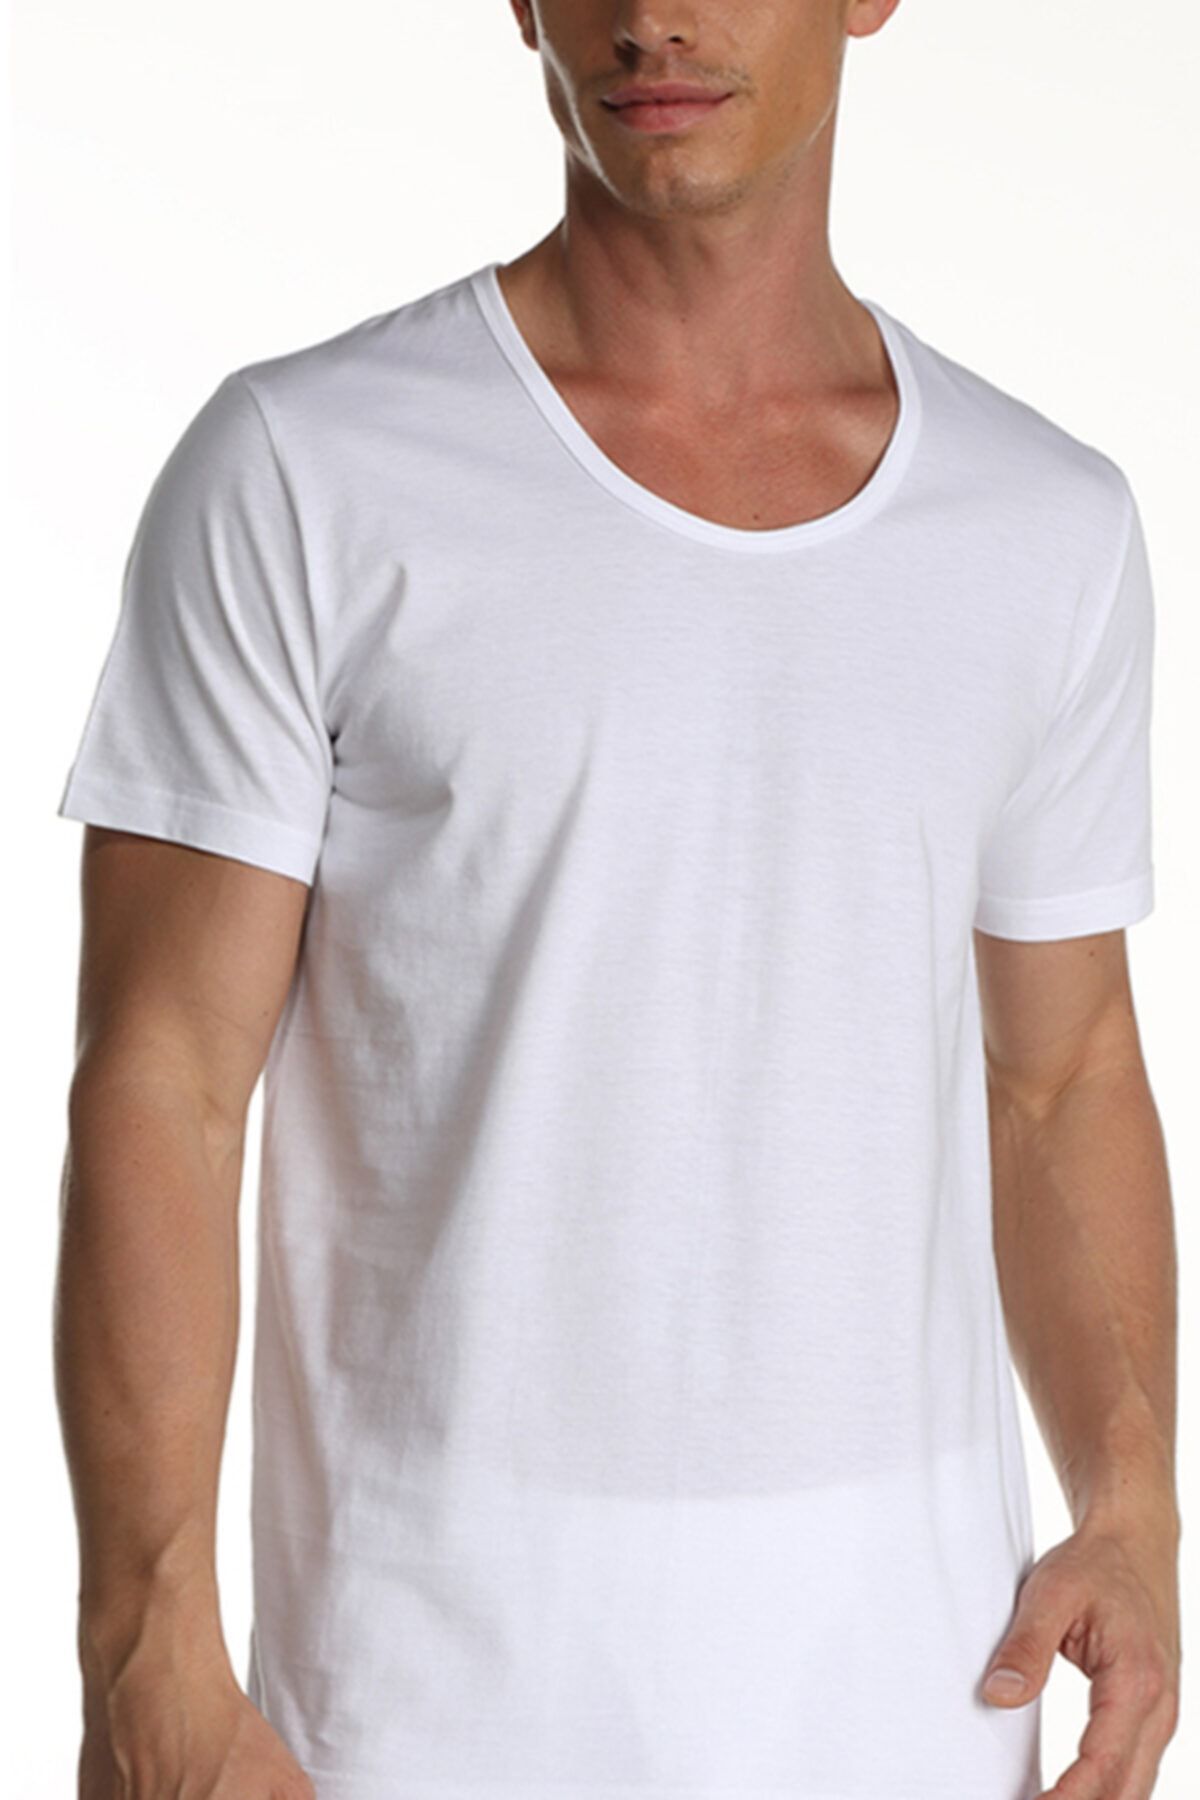 Çift Kaplan Erkek Süprem Bisiklet Yaka Beyaz T-shirt 0953